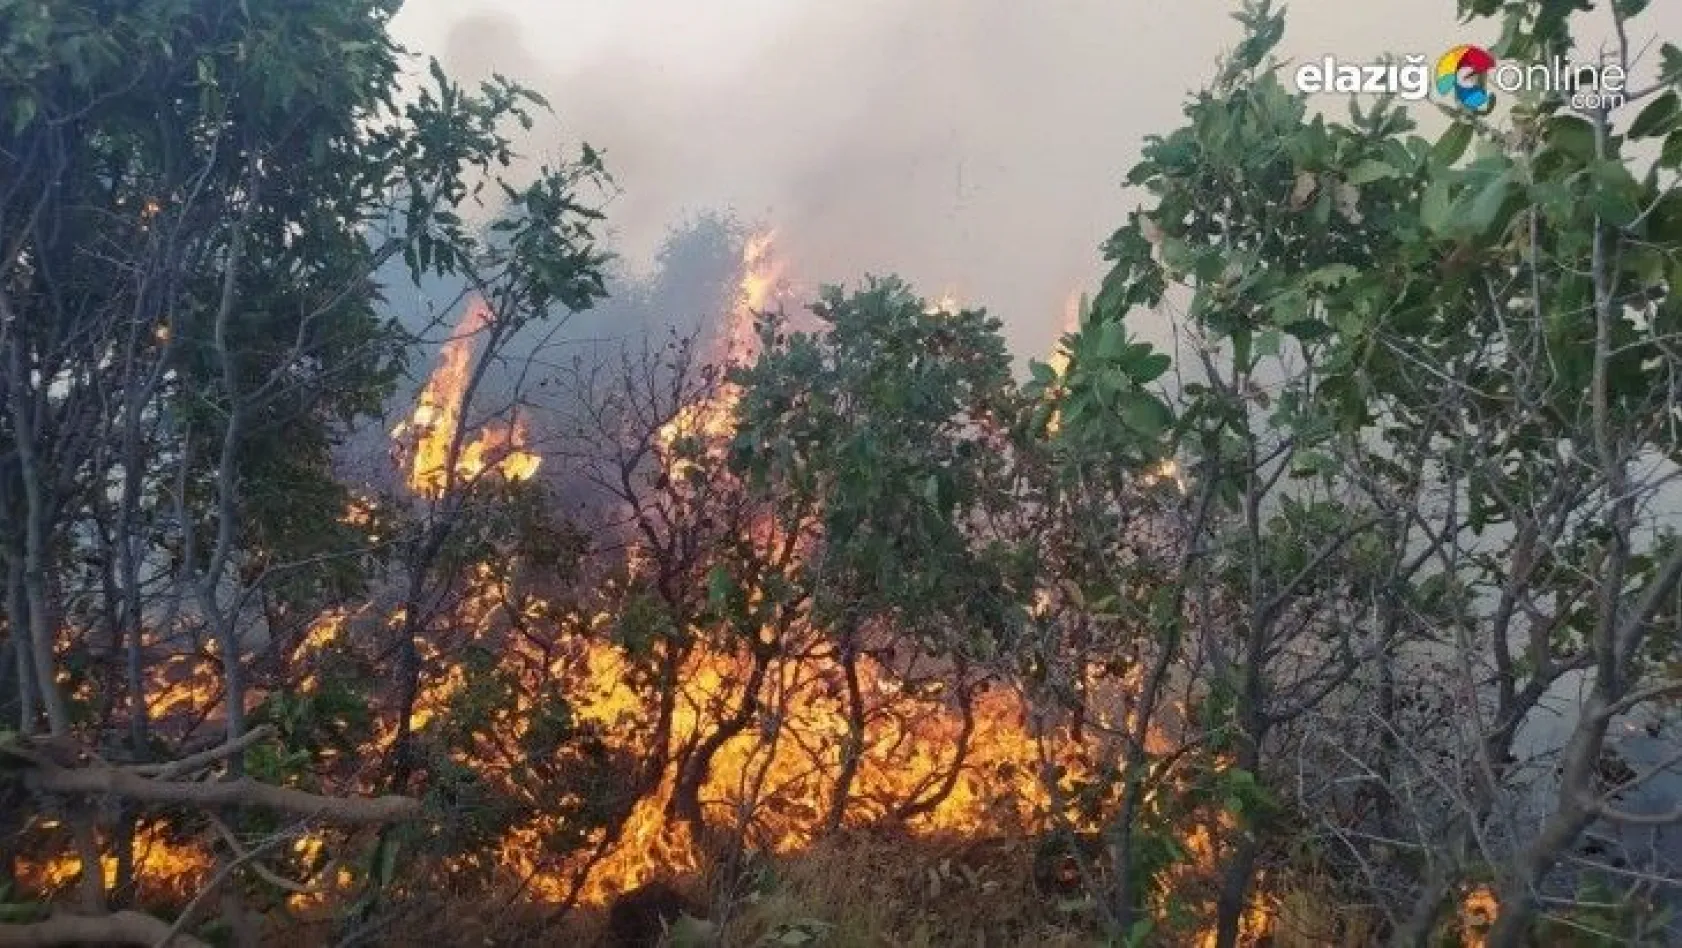 Elazığ'da korkutan orman yangını!